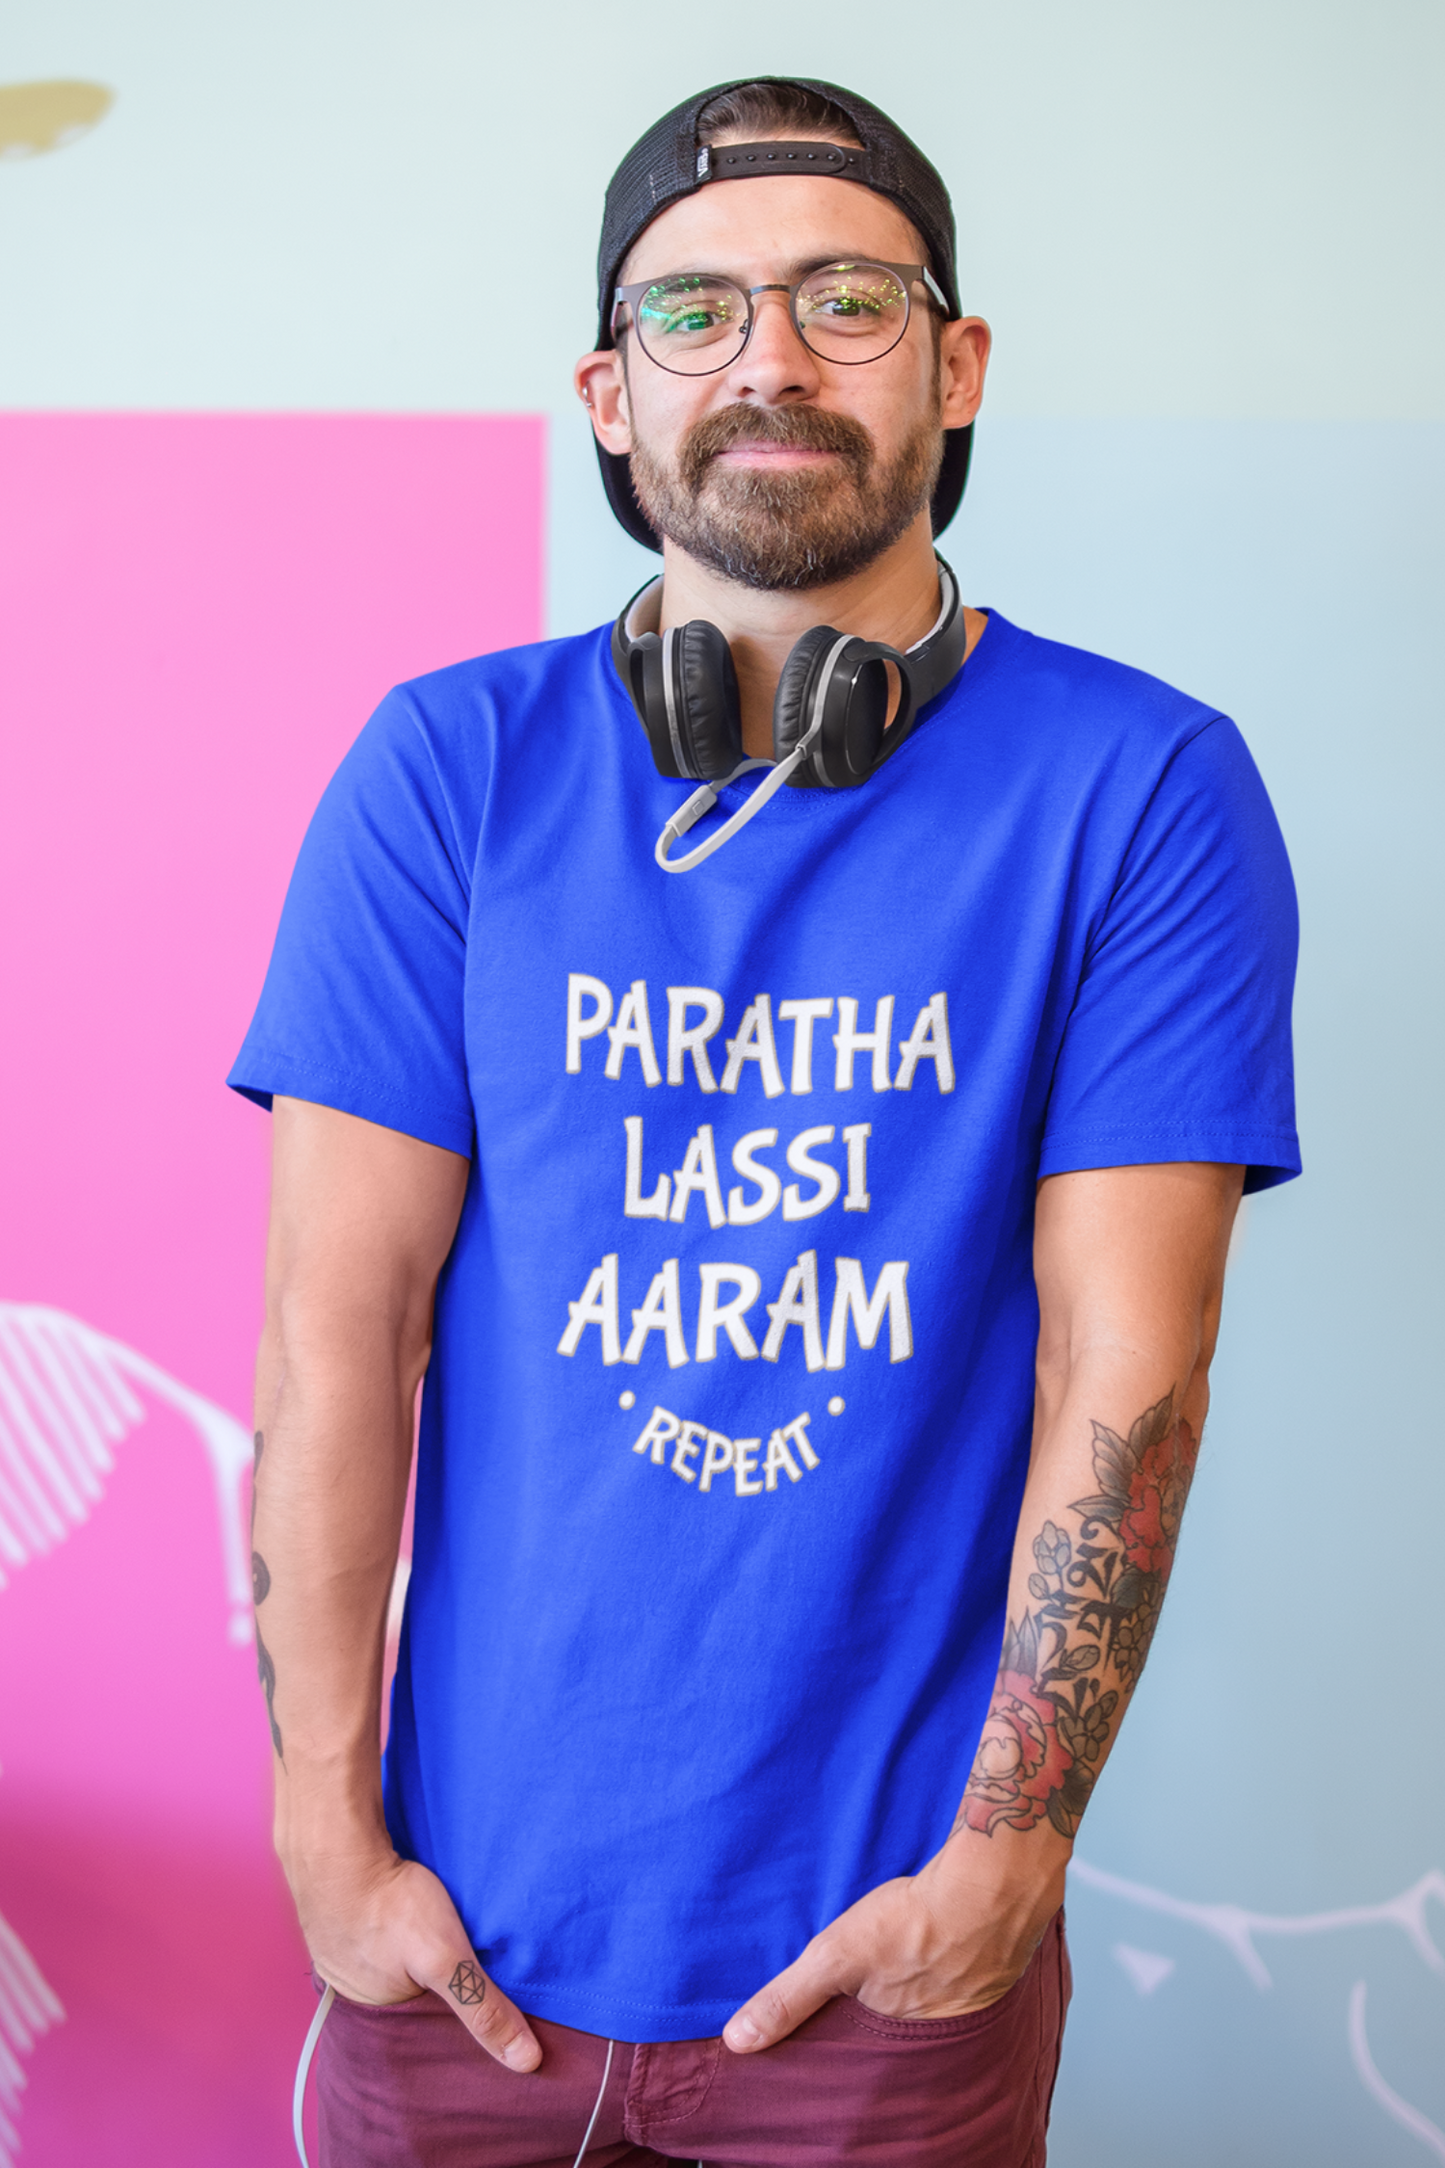 Paratha Lassi Aaram Repeat | Punjabi T-Shirt For Men